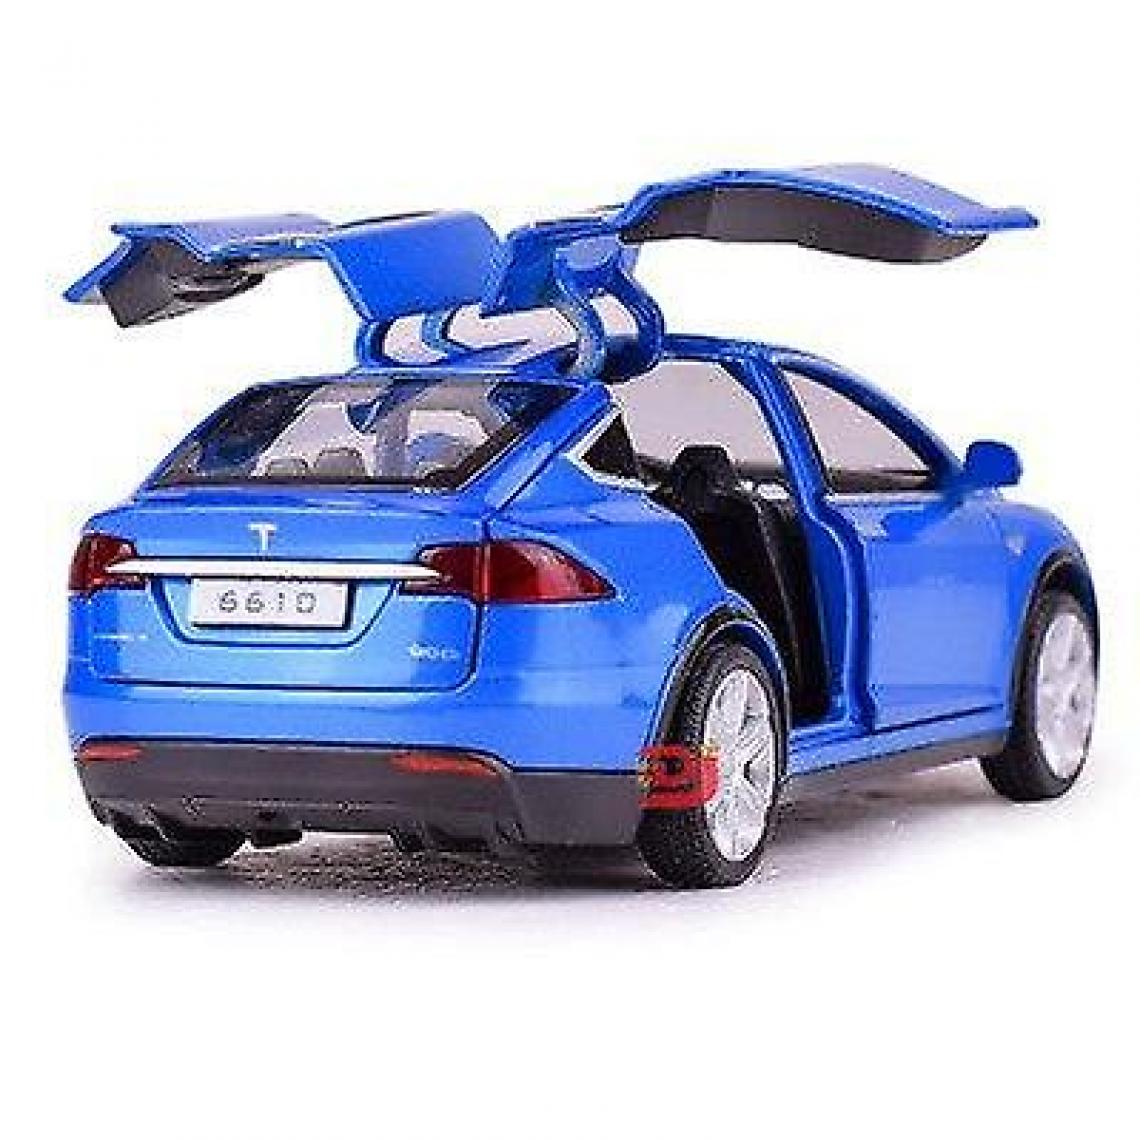 Universal - Un modèle de voiture en alliage à six portes, un modèle Tesla X avec des lumières simulées et des jouets musicaux pour les enfants.(Bleu) - Voitures